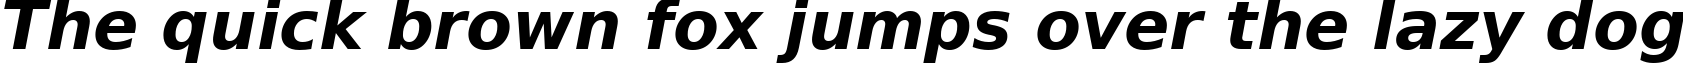 Пример написания шрифтом Bold Oblique текста на английском